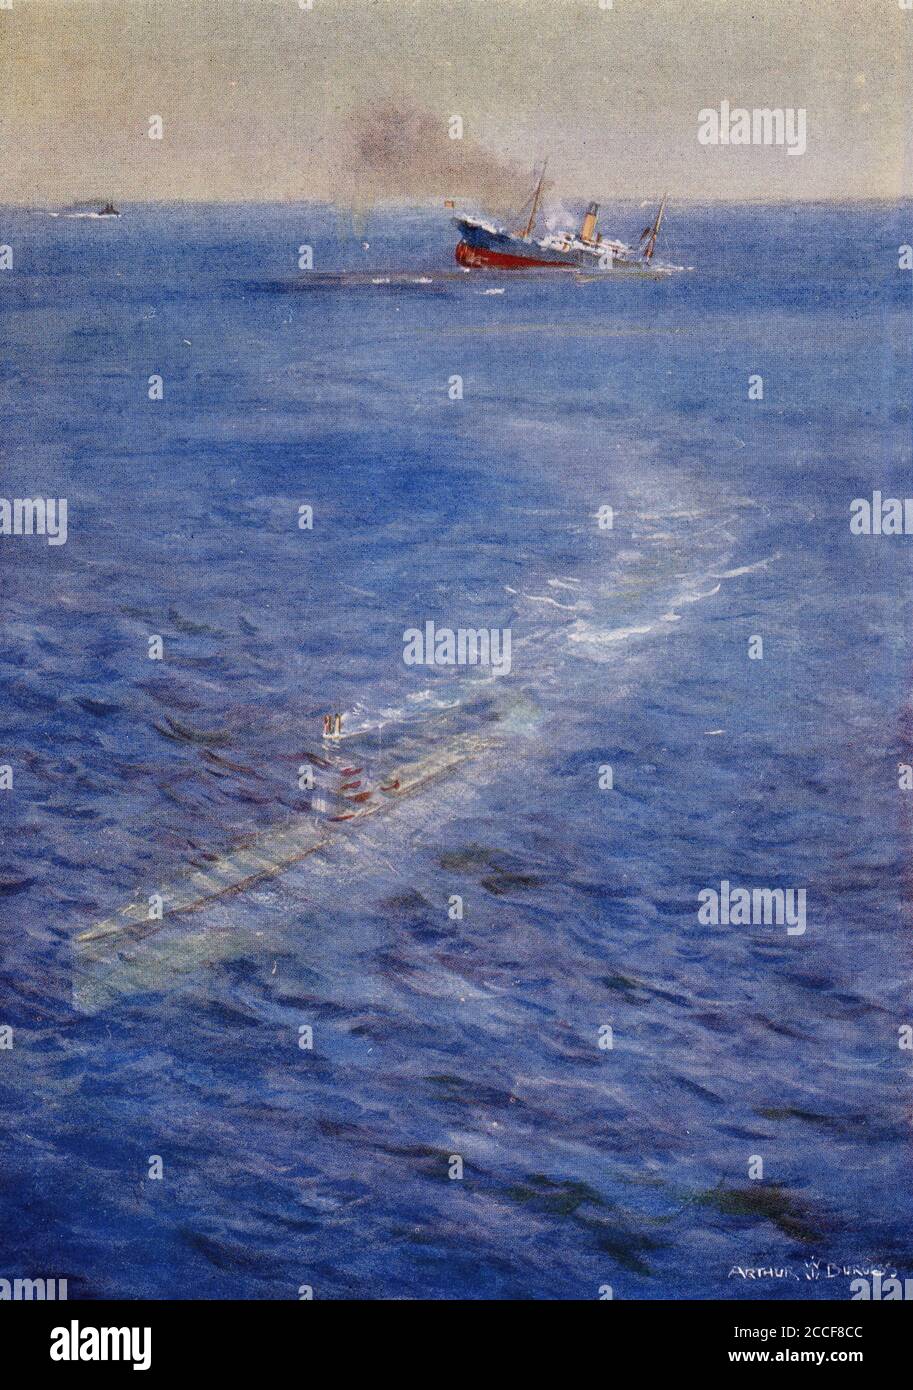 Demi-ton d'un U-boat allemand qui navigue loin d'un navire en naufrage pendant la première Guerre mondiale. De l'Histoire de la Grande Guerre. Banque D'Images